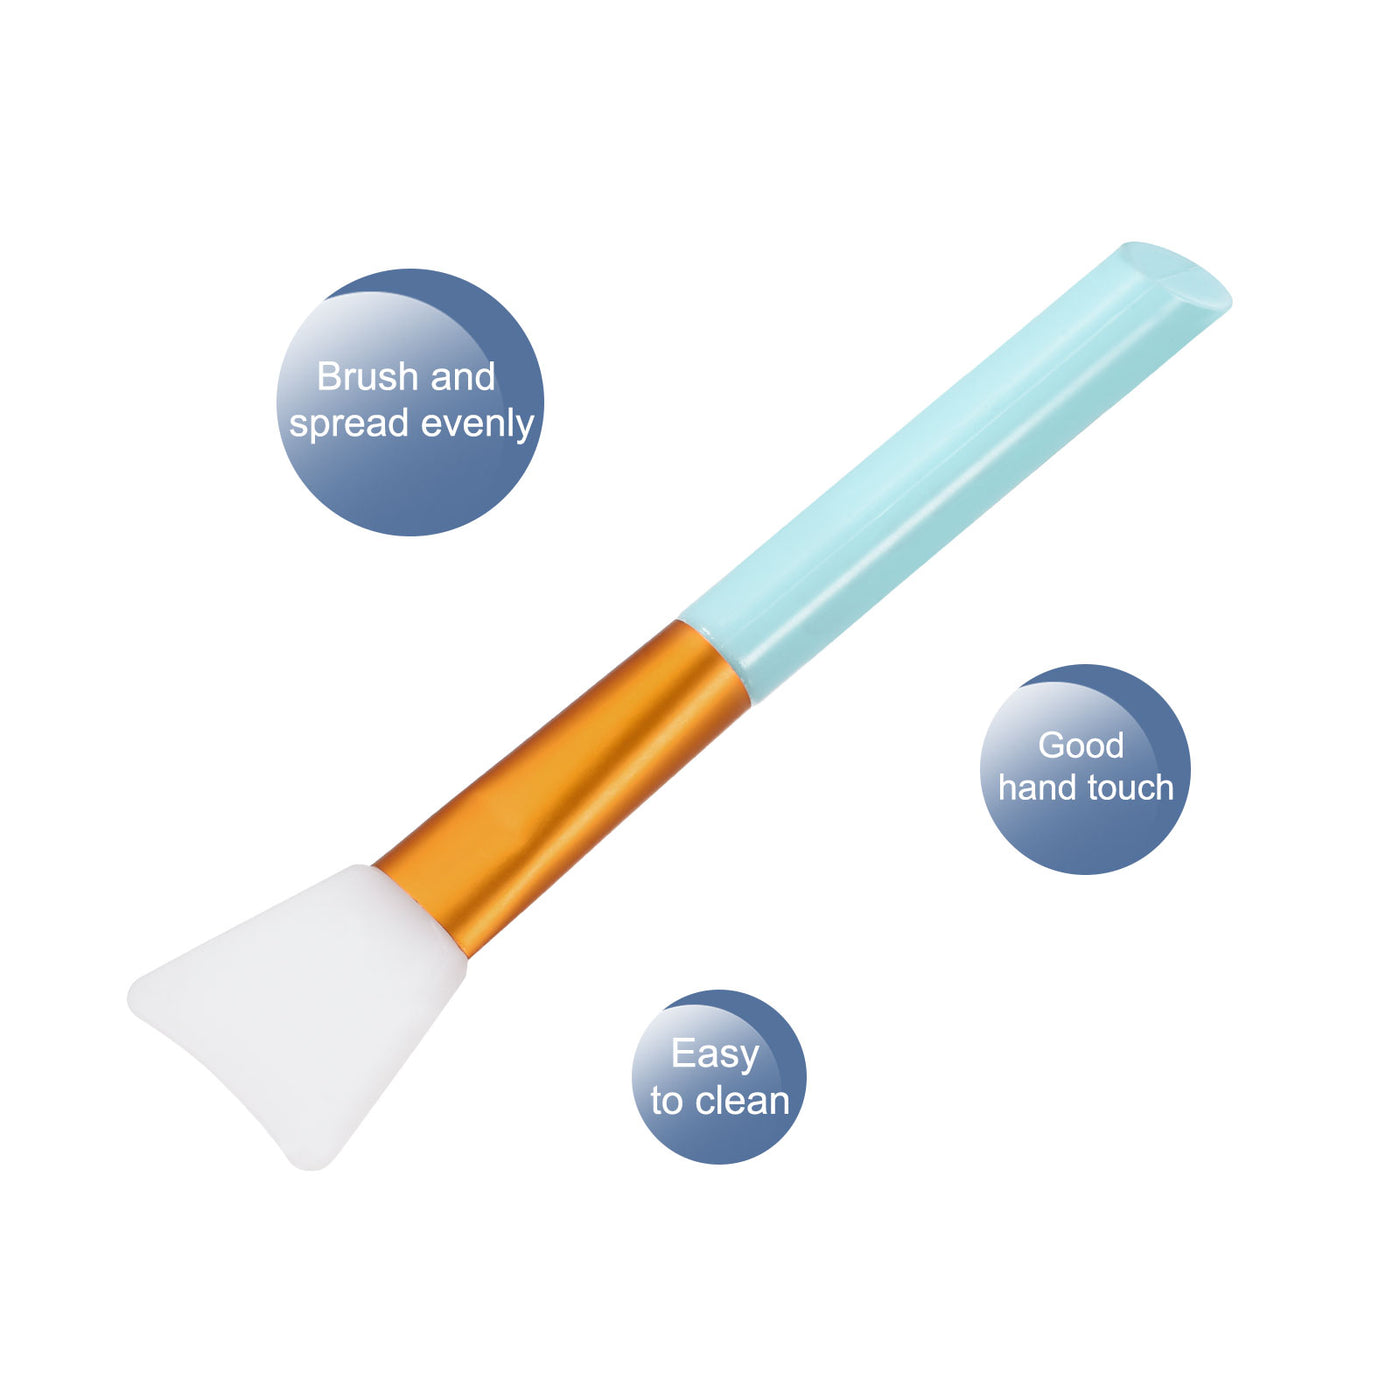 Harfington Silicone Epoxy Brushes Blue Applicator DIY Brush for Making Epoxy Tumbler, Pack of 4